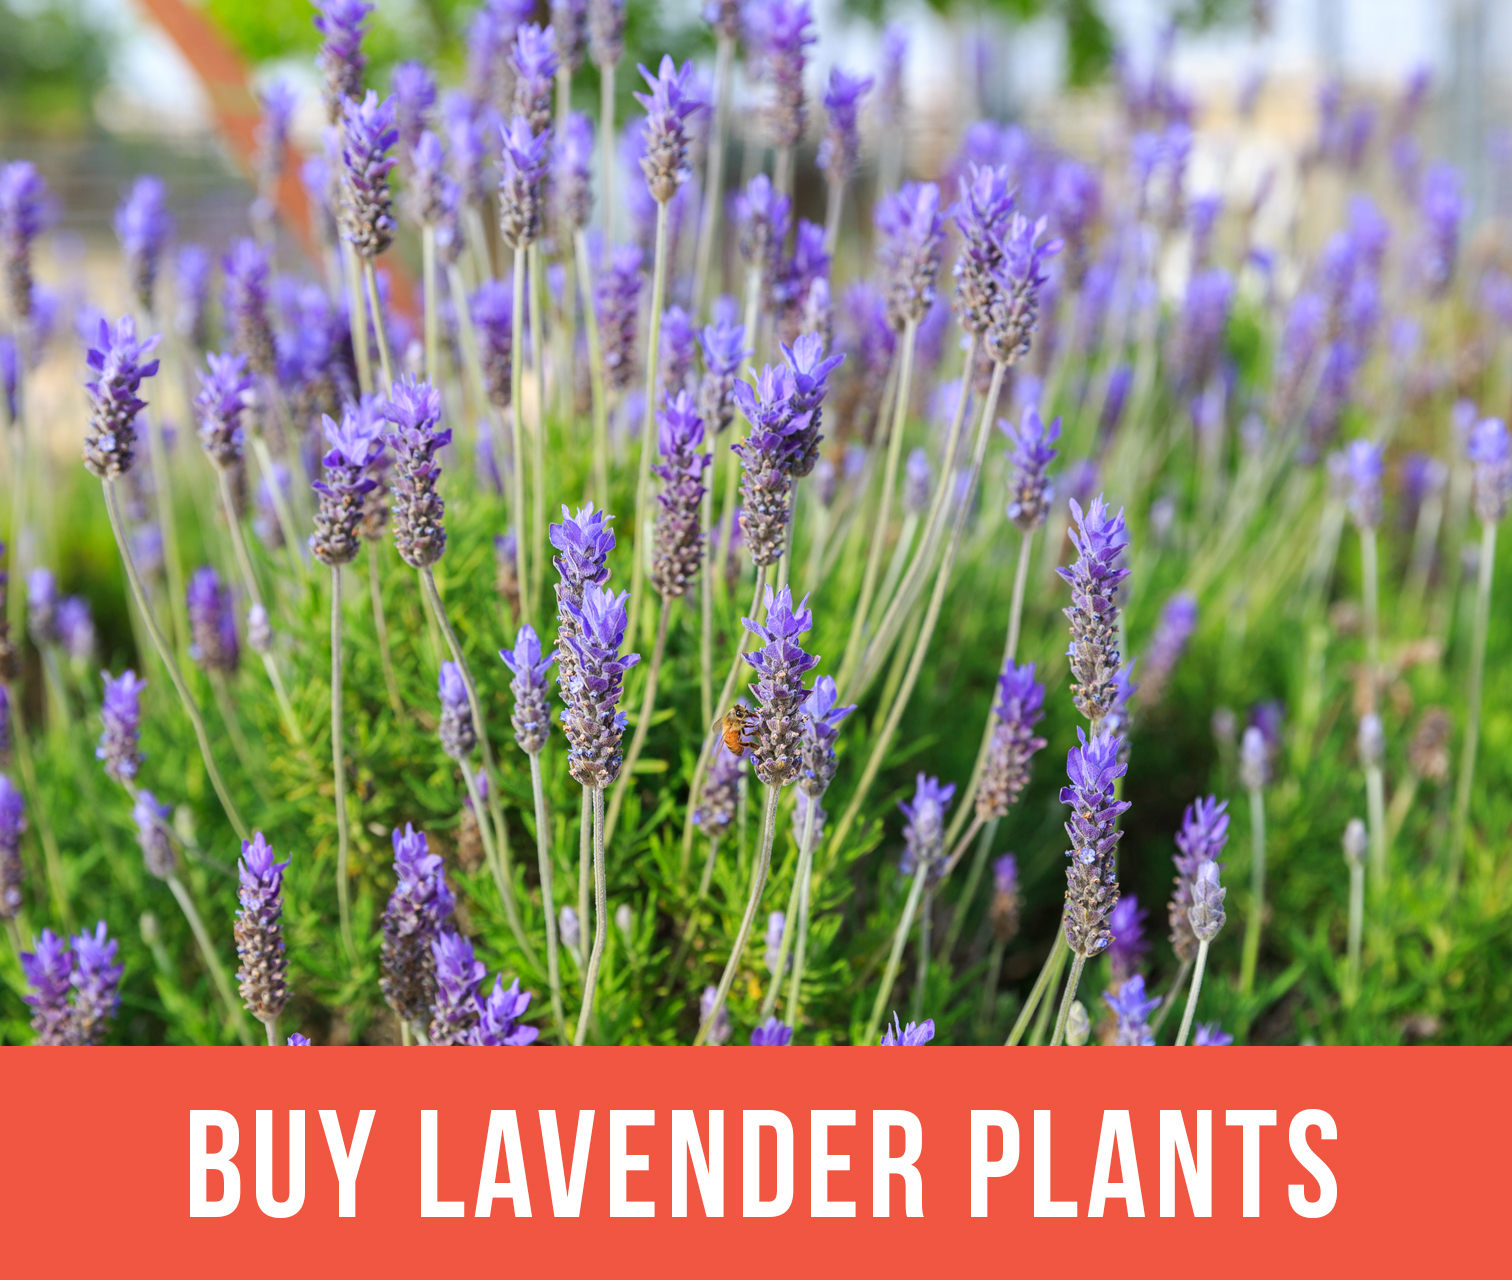 Growing Lavender - Planting & Caring for Lavender Plants | Garden Design